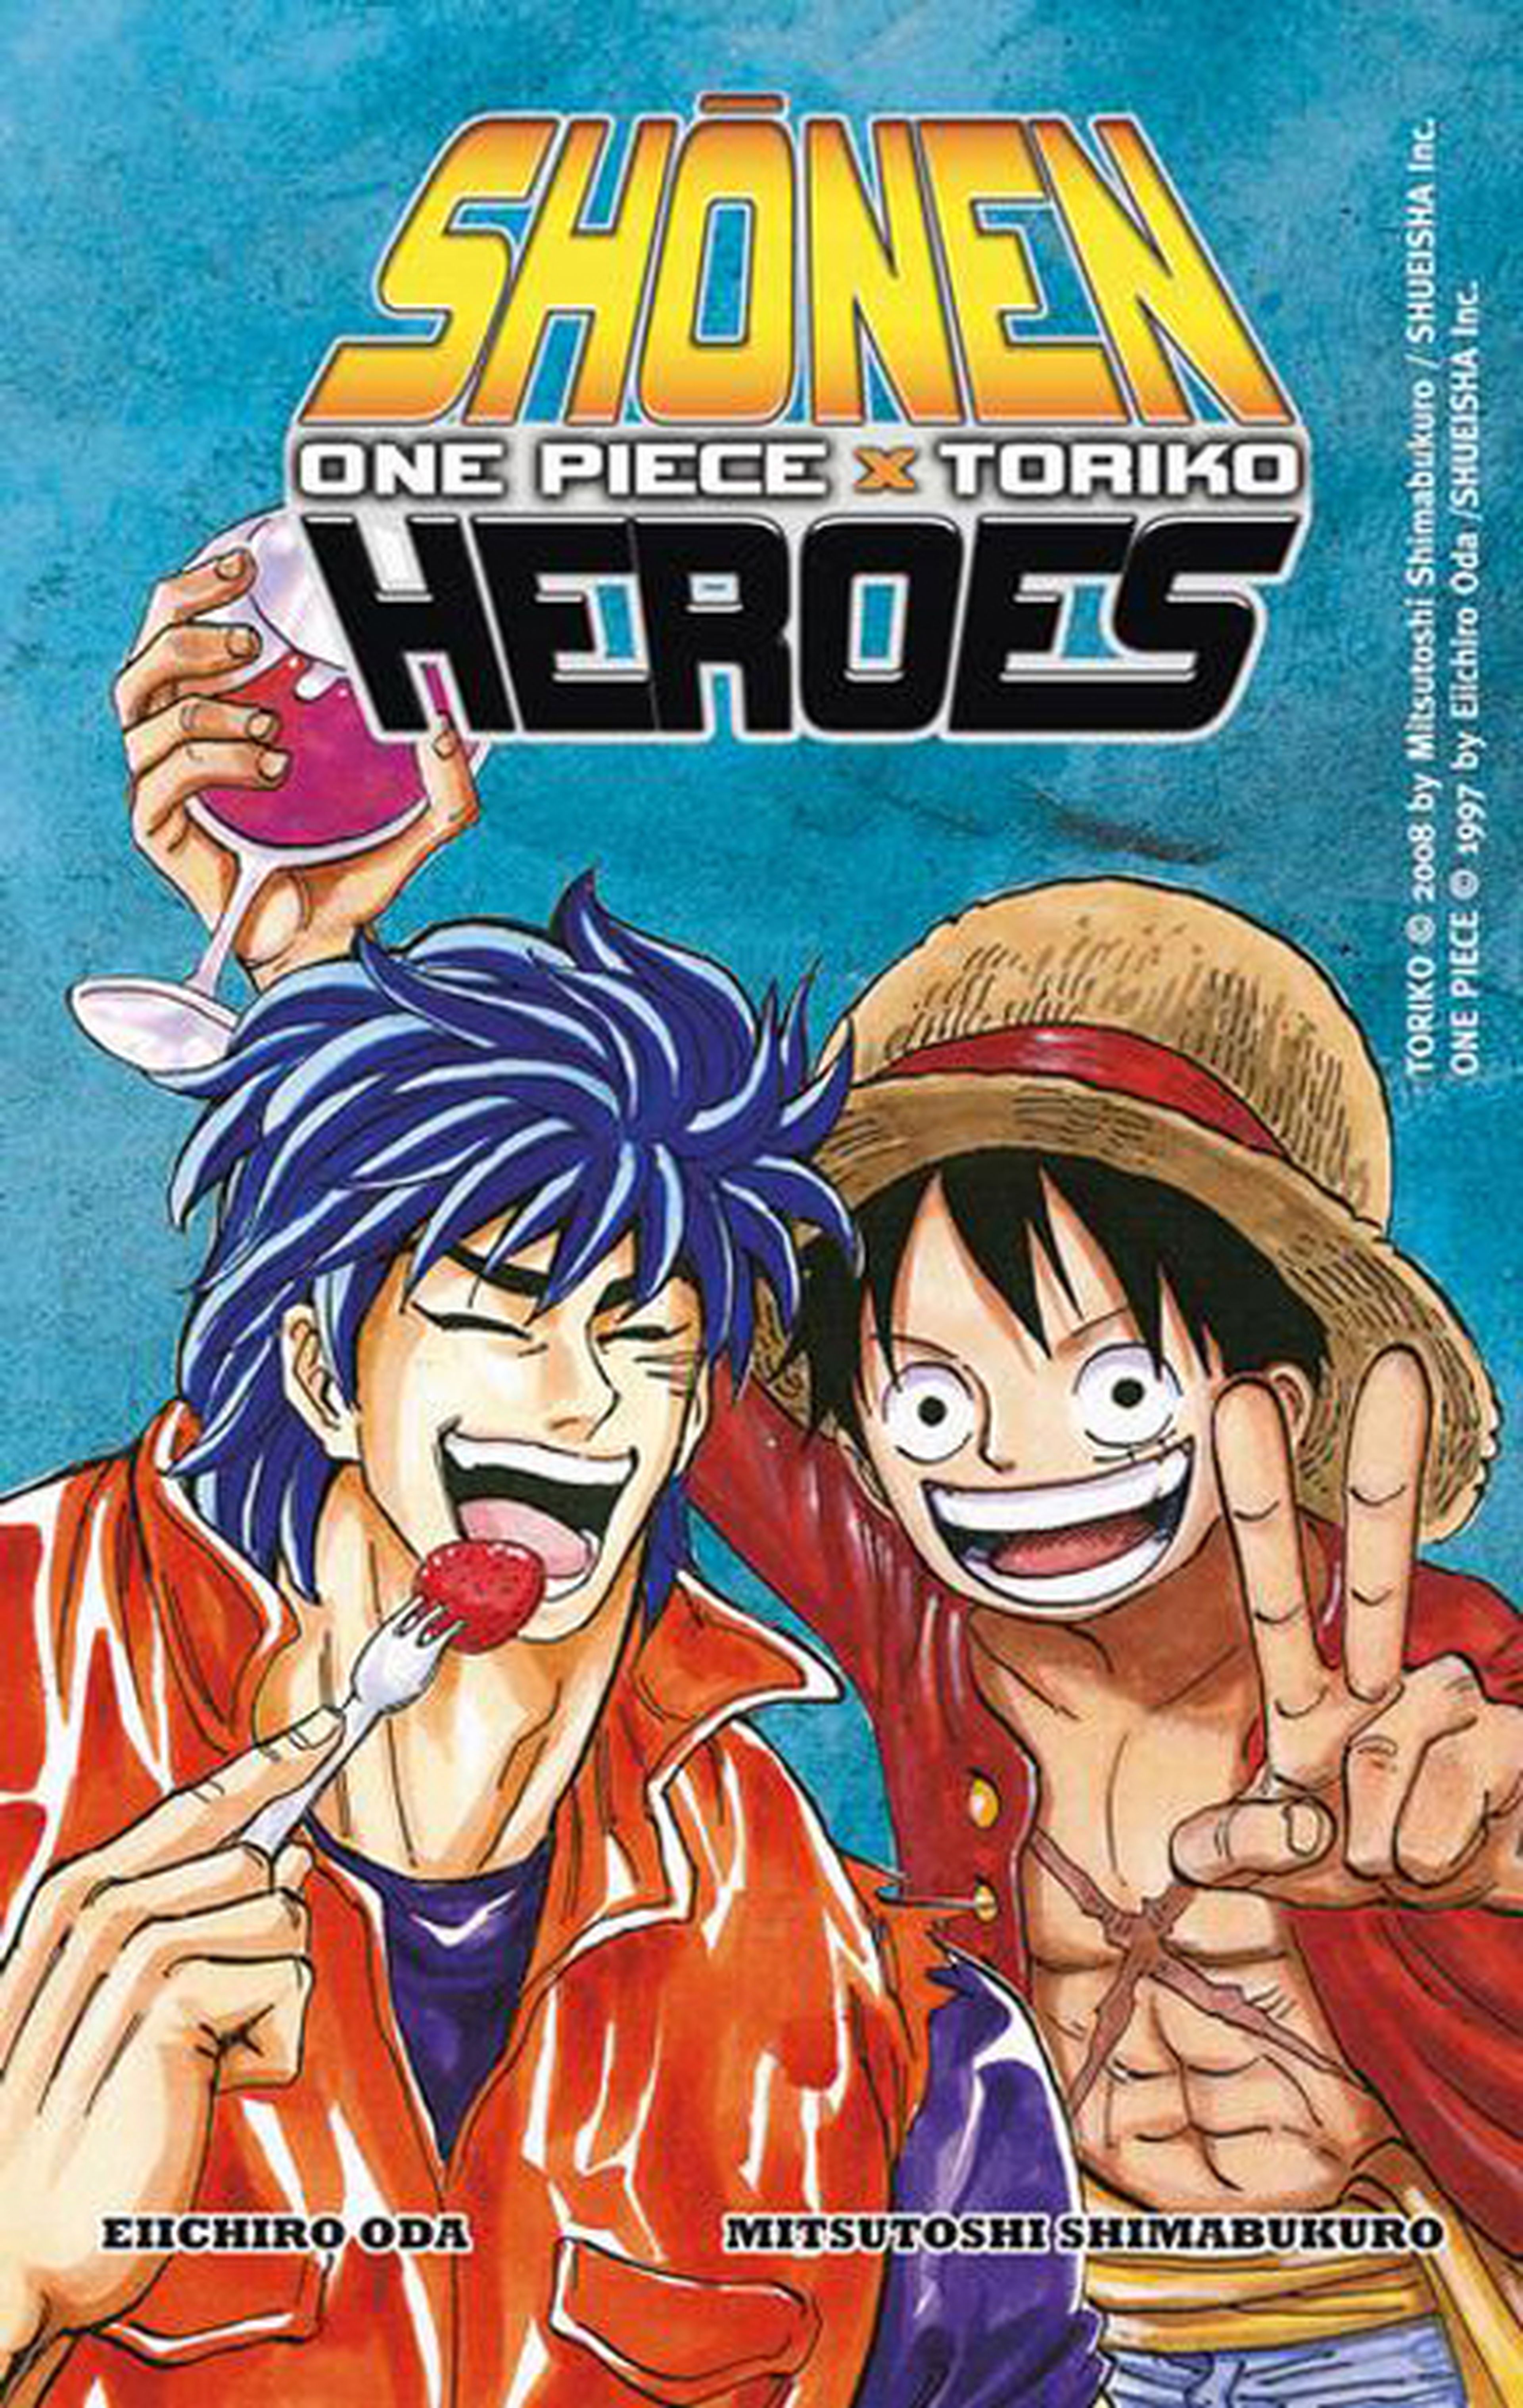 Exposición de One Piece y Toriko en el Salón del Manga